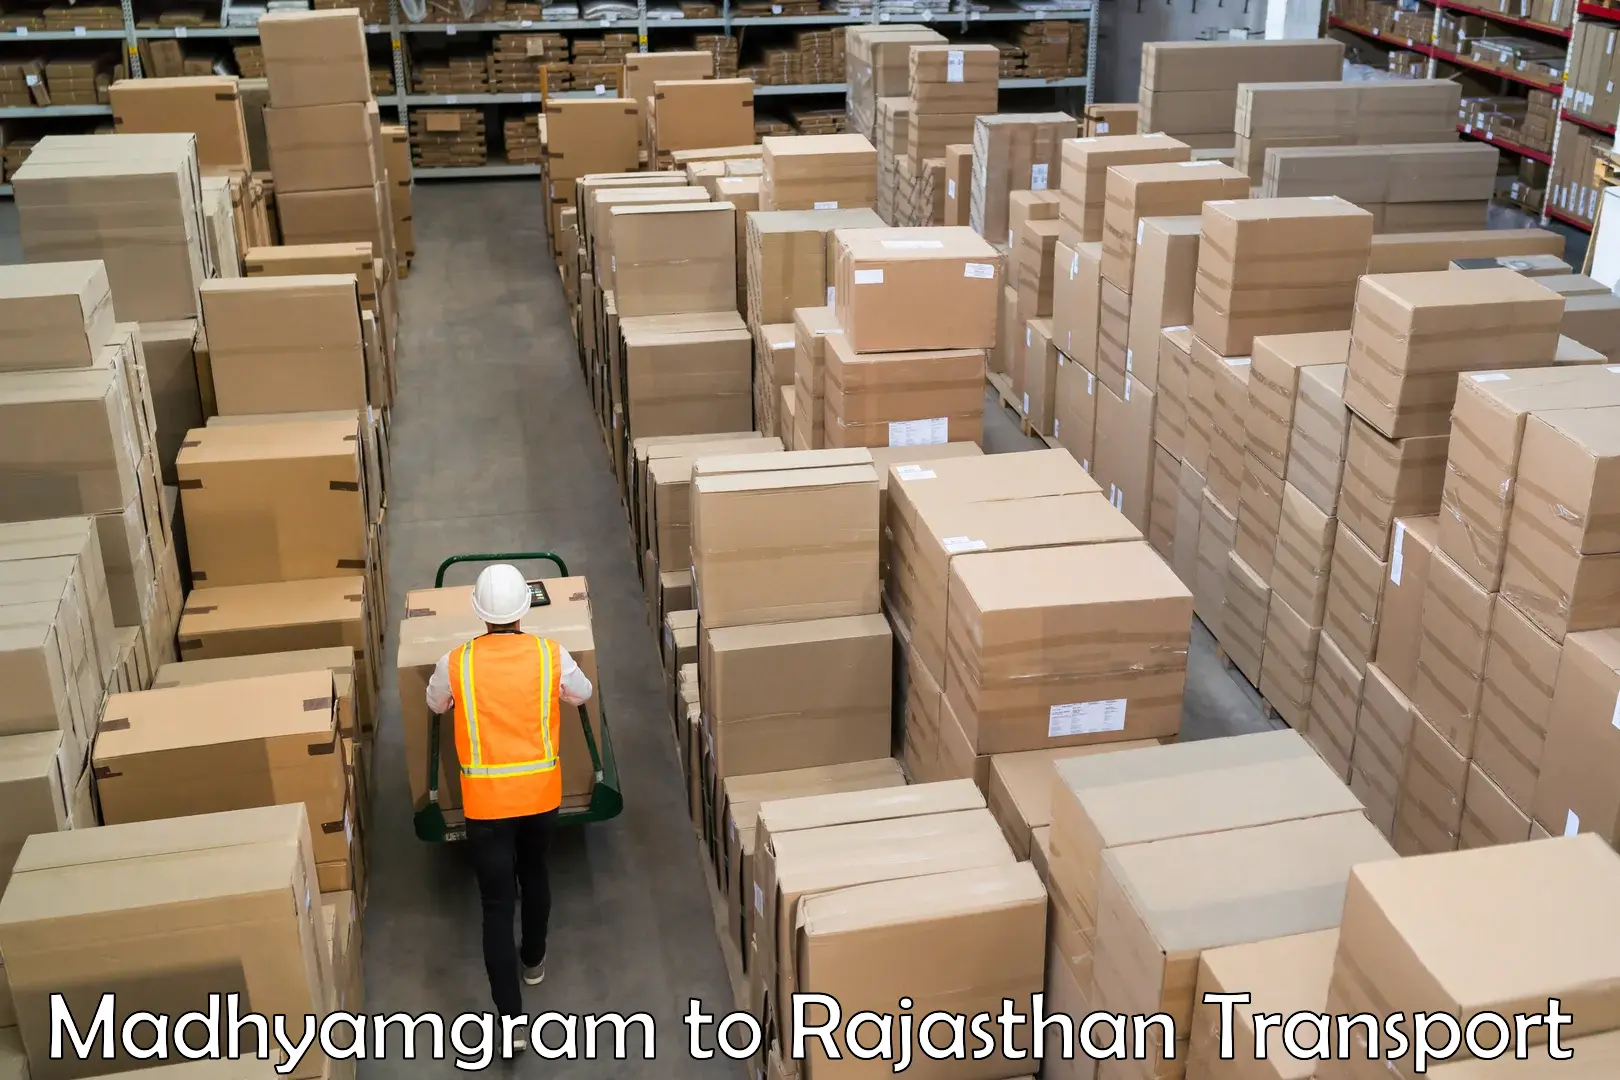 Shipping partner Madhyamgram to Makrana